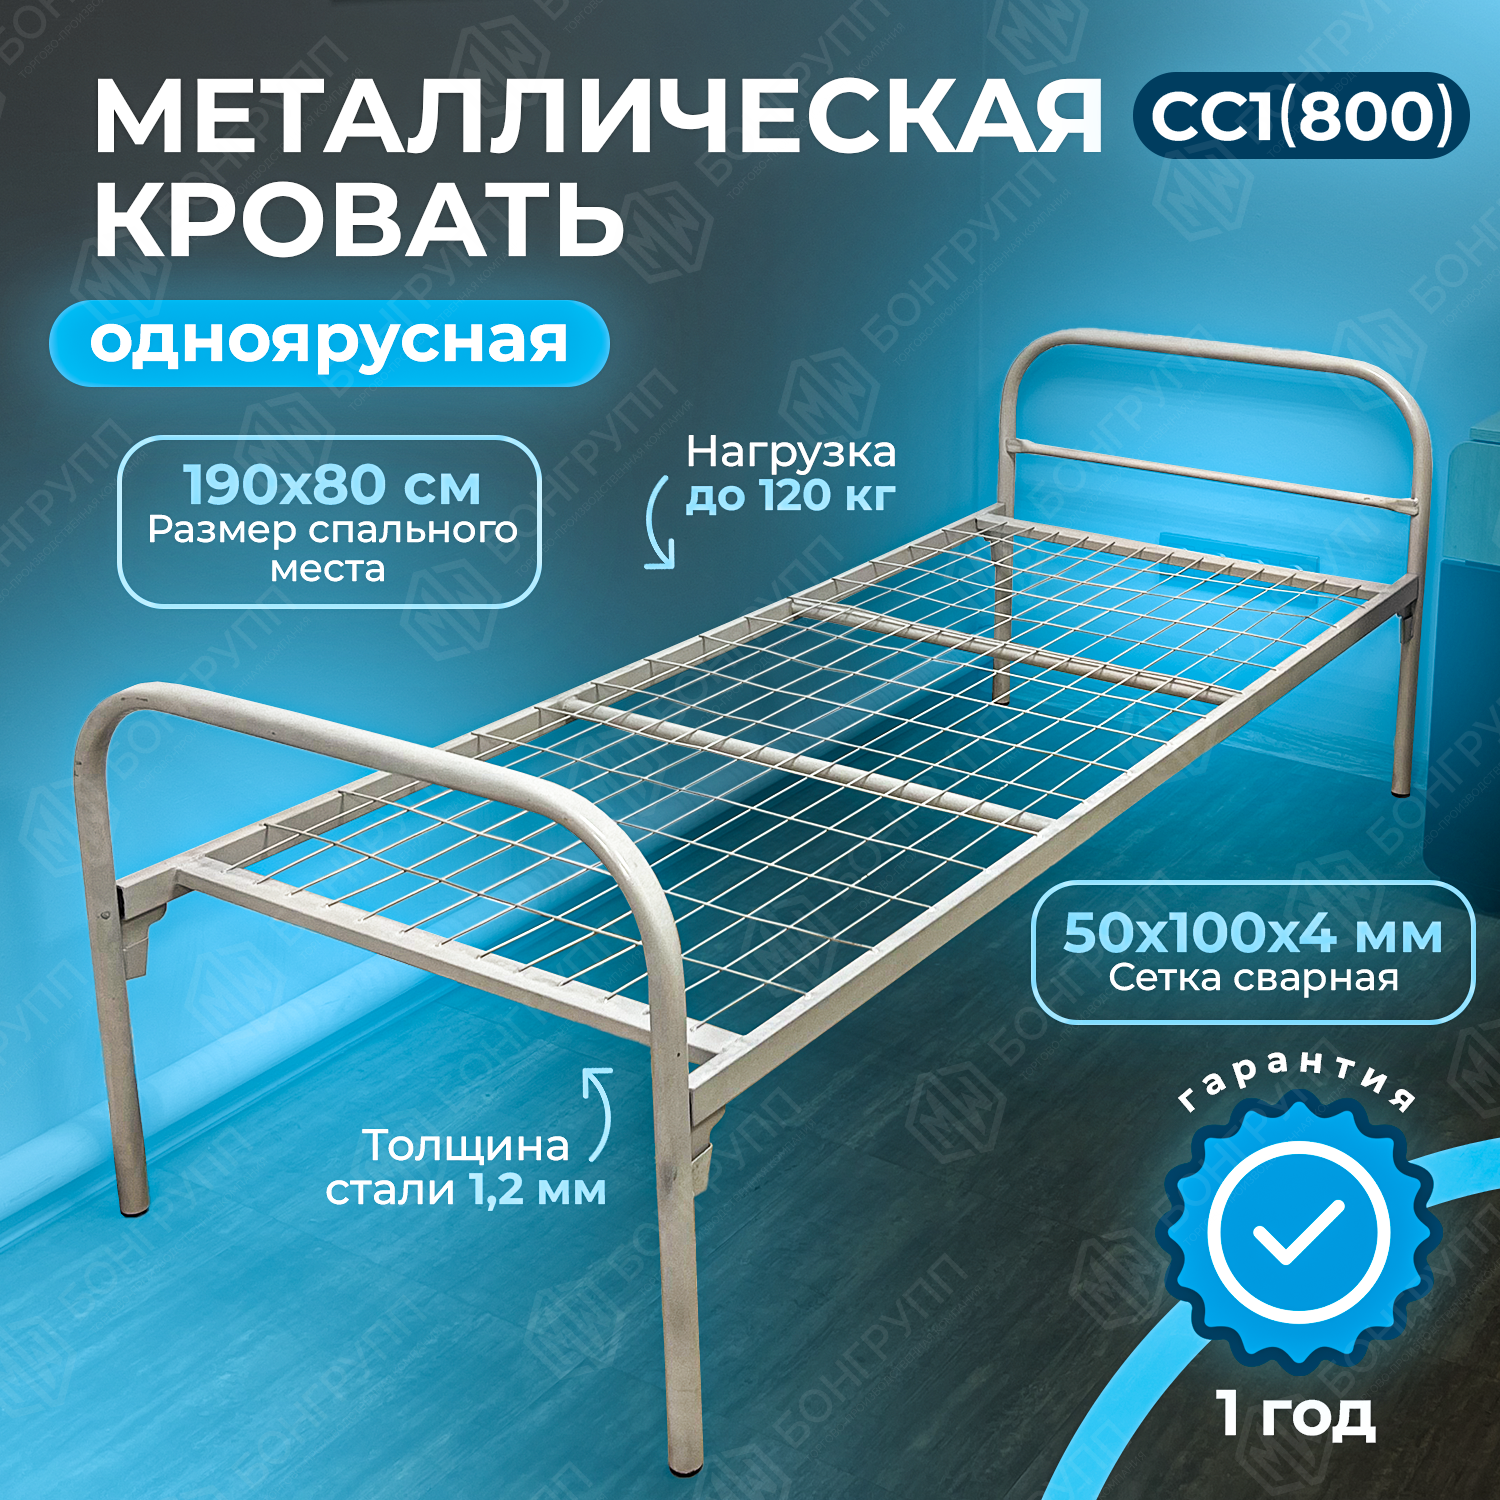 Кровать одноярусная металлическая MW СС1 (800)